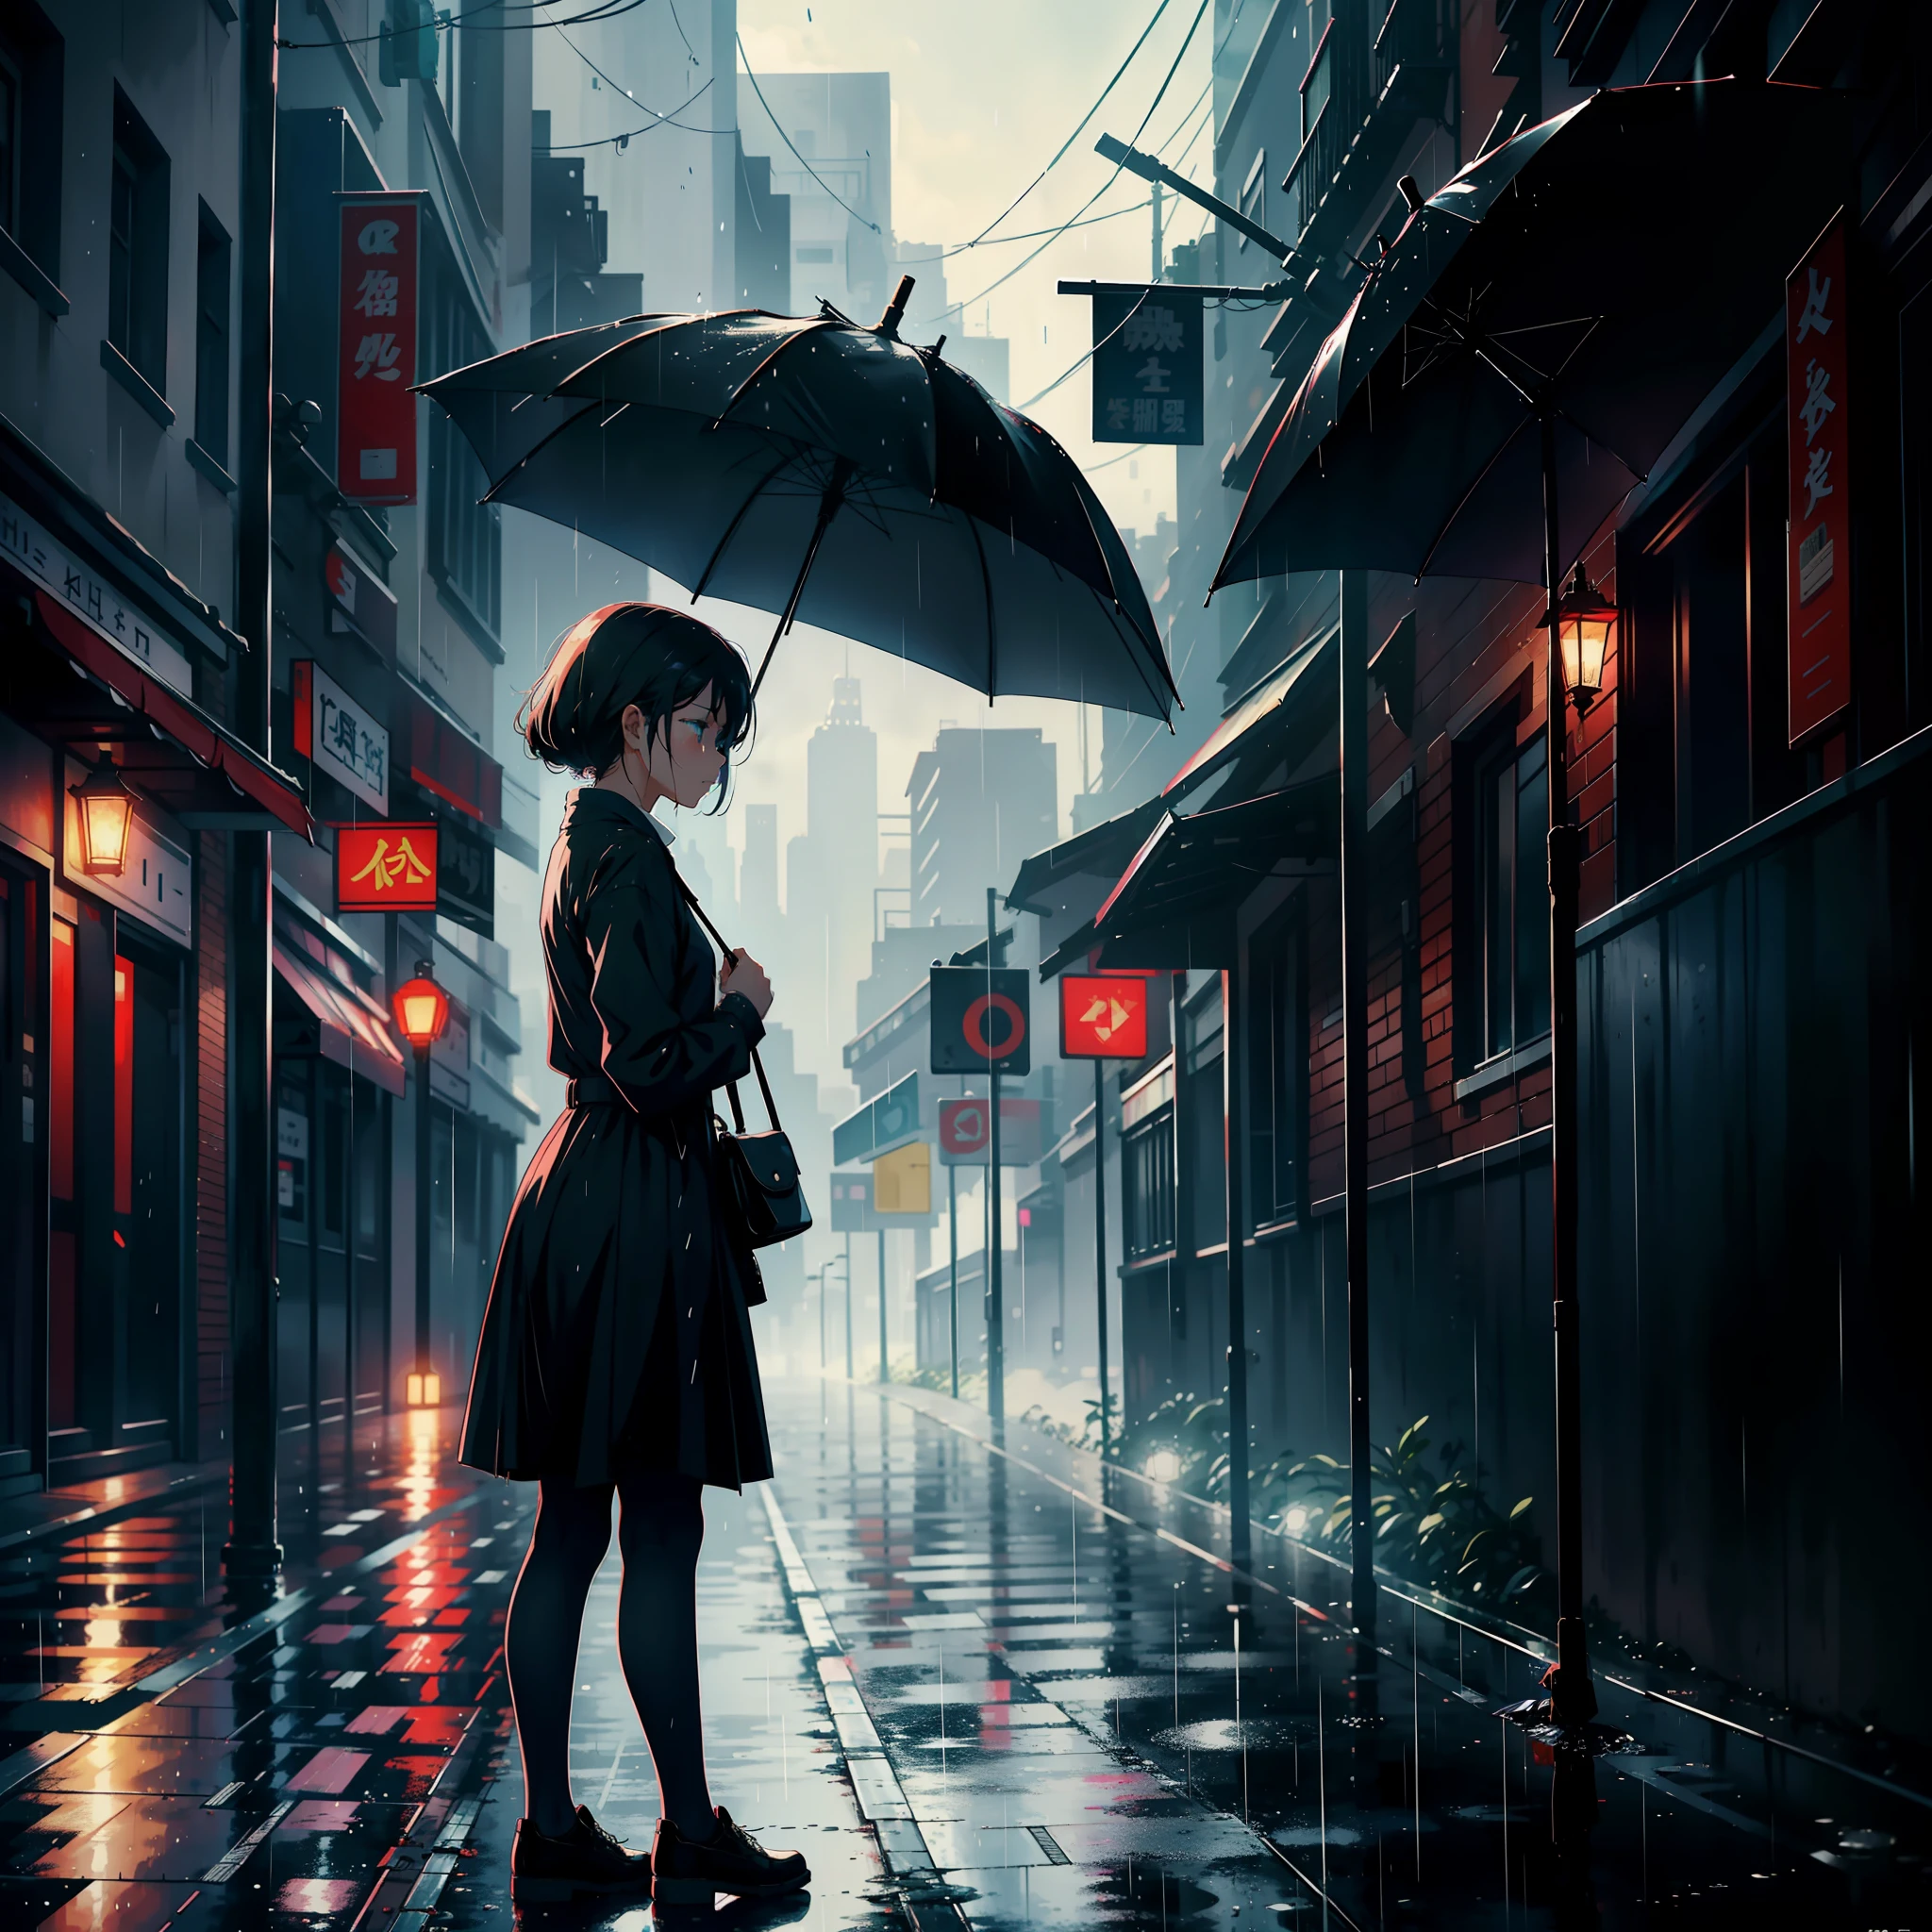 Девушка с зонтиком стояла на обочине улицы., плач, выглядишь грустным и идет дождь